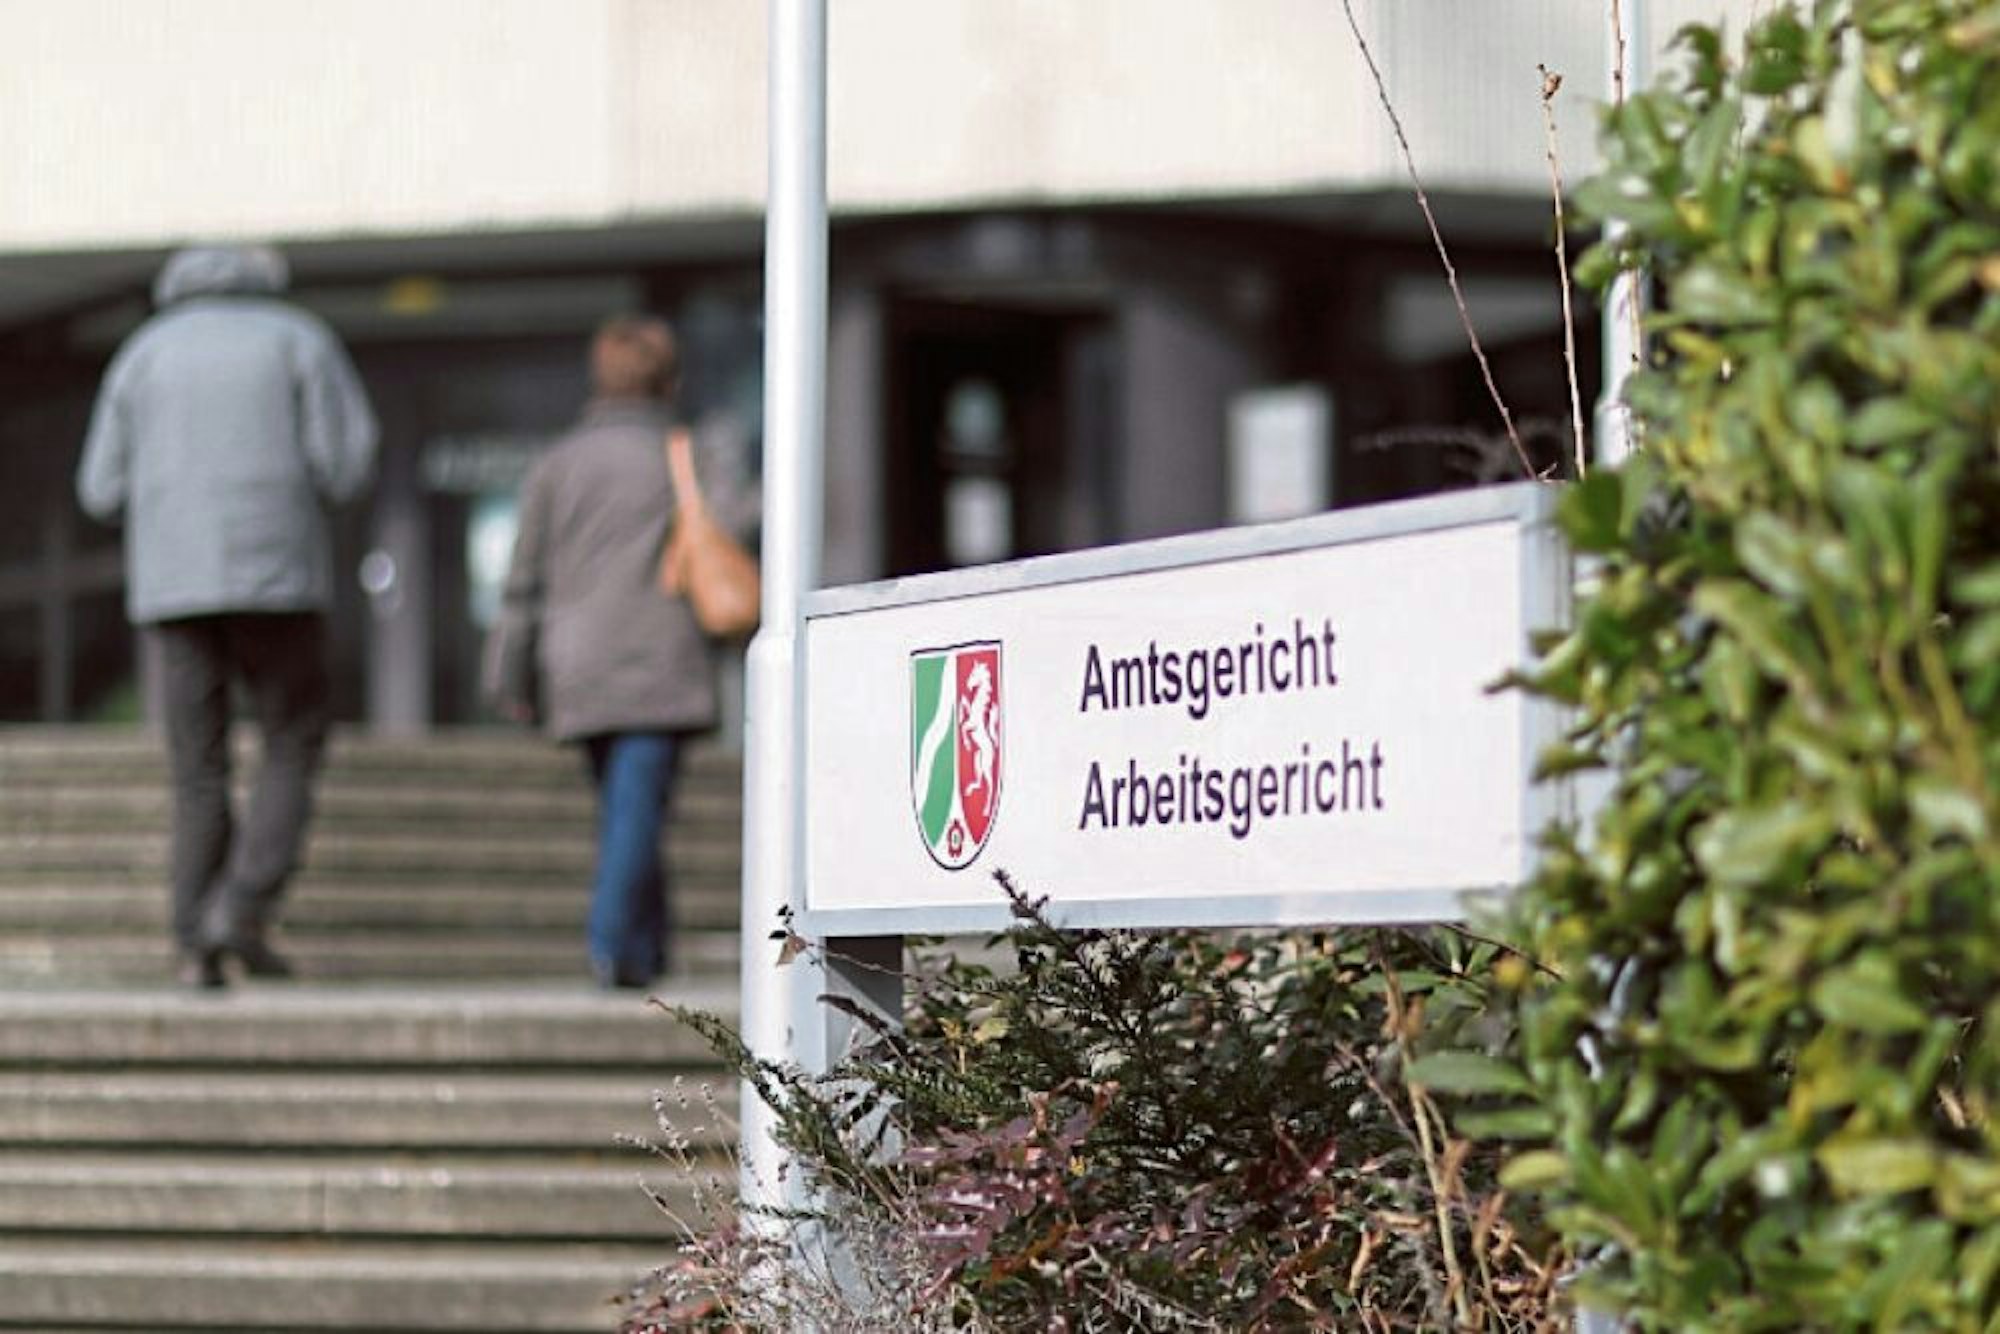 Ohne Studenten auf dem Campus fehlen der Kantine der Hochschule Bonn-Rhein-Sieg die Kunden – daher ist sie schon seit Dezember geschlossen (links). Die Amtsgerichtskantine, seit Freitag geschlossen, ist auch bei externen Besuchern beliebt.